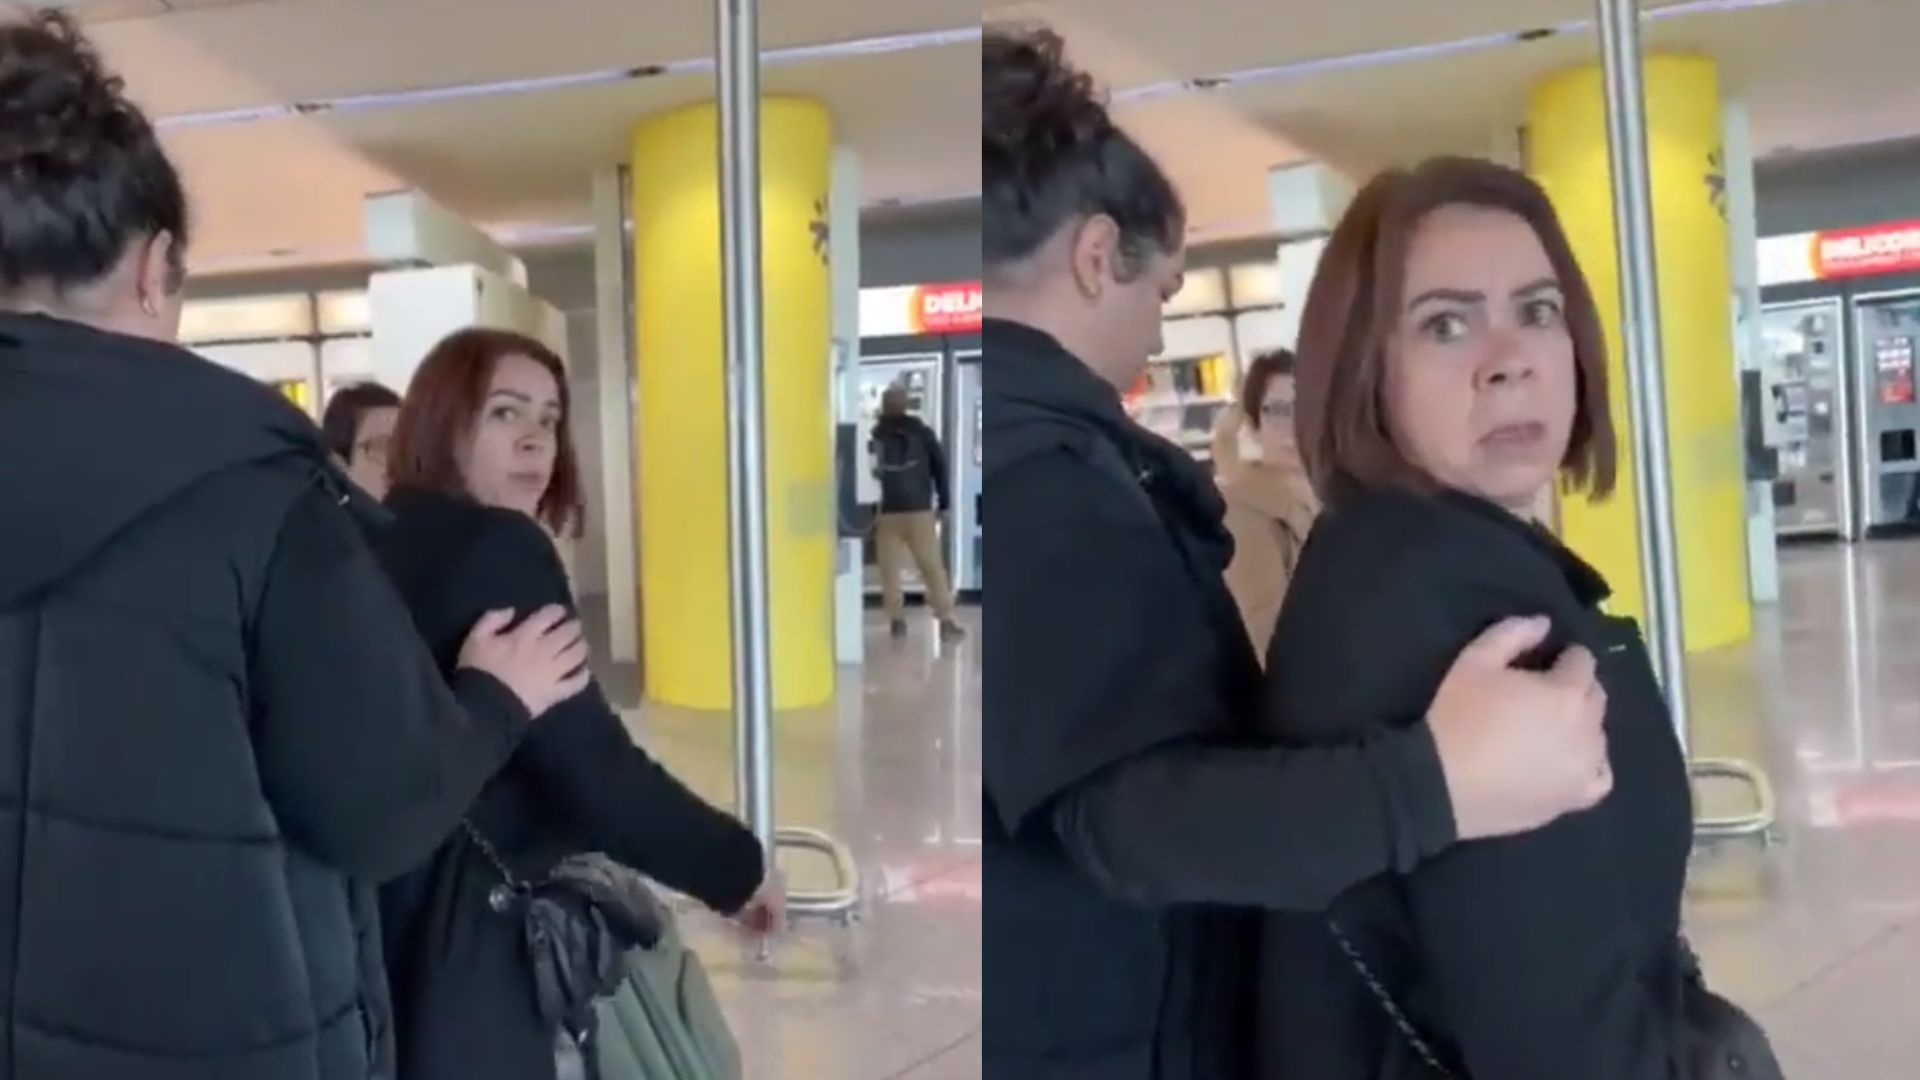 Vídeo: Brasileira filma momento em que é xingada por portuguesa em aeroporto: “Vai para a sua terra, sua porca”